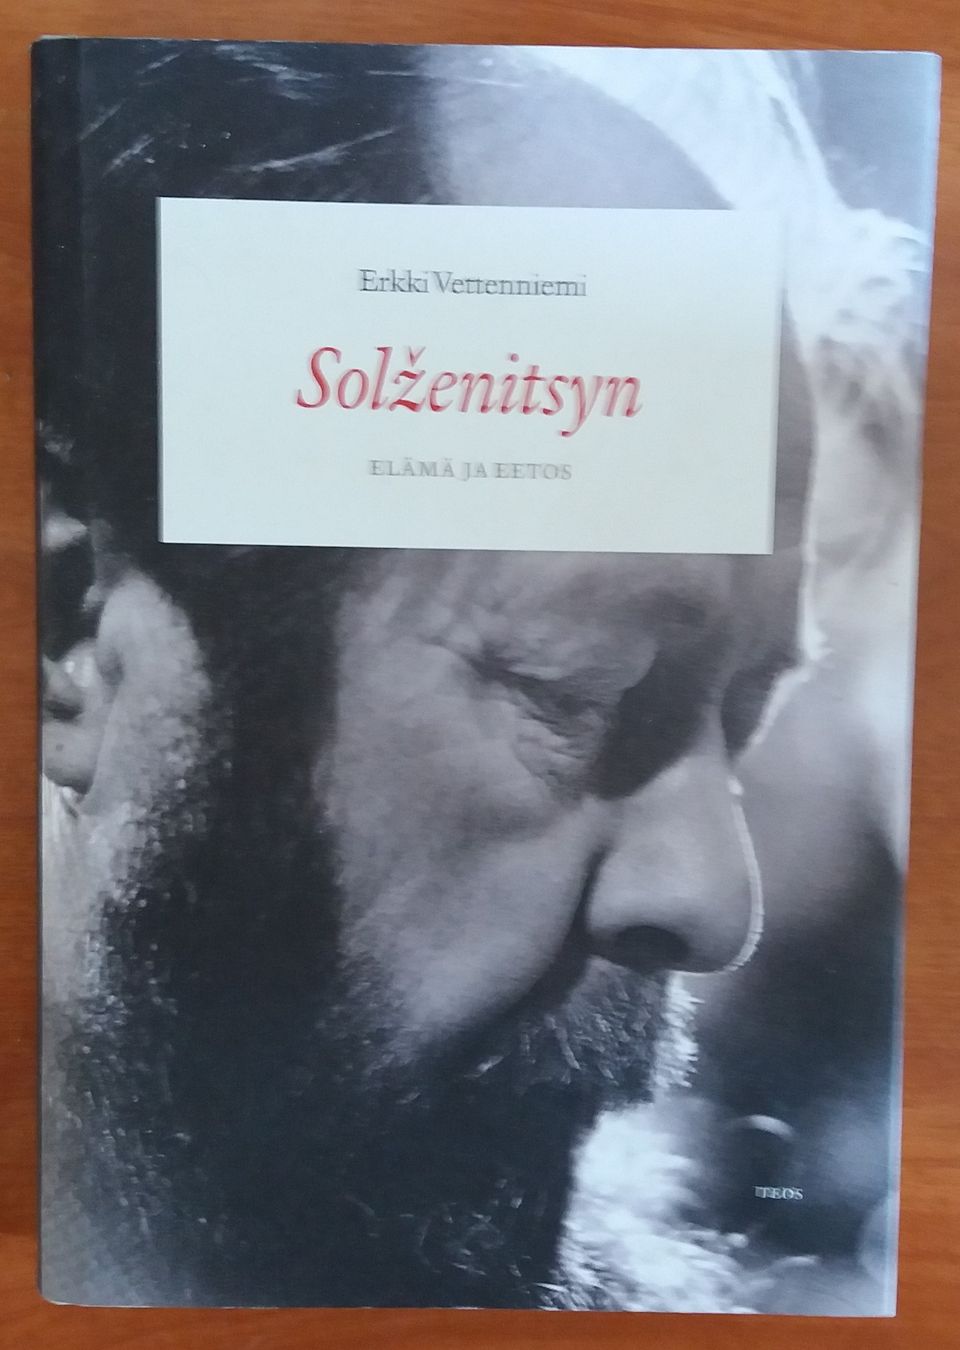 Erkki Vettenniemi SOLZENITSYN - Elämä ja eetos Teos 2015